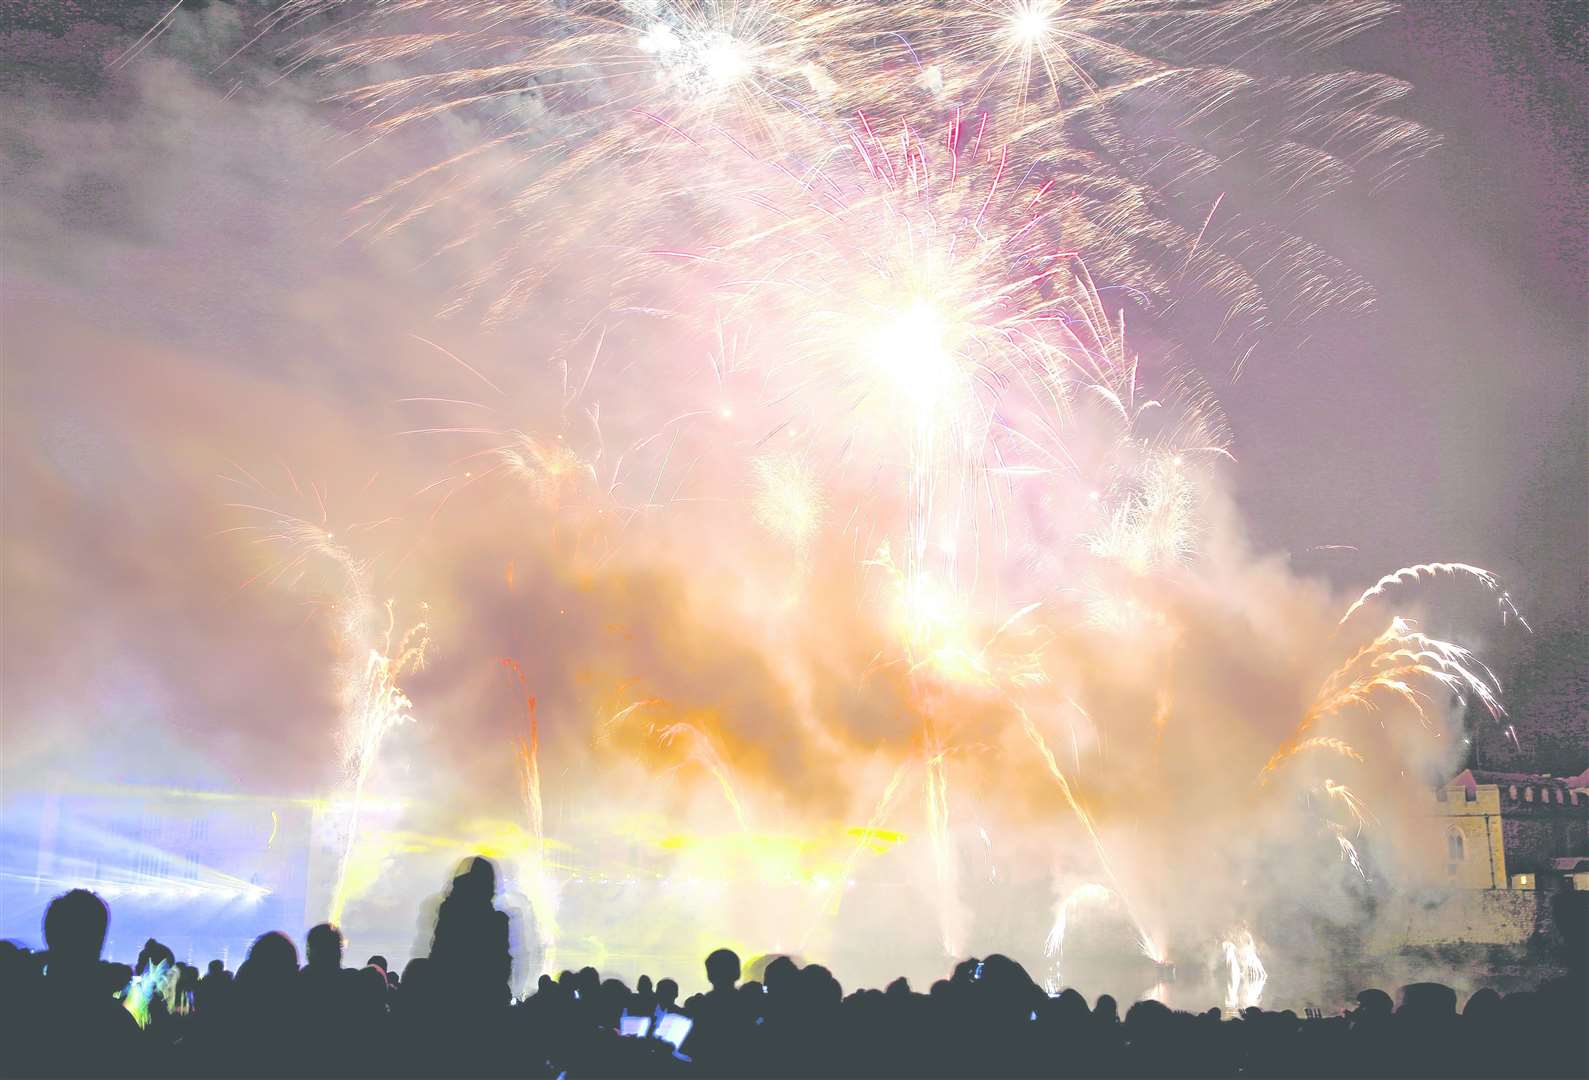 Leeds Castle Fireworks display in 2014. Picture: Matthew Walker